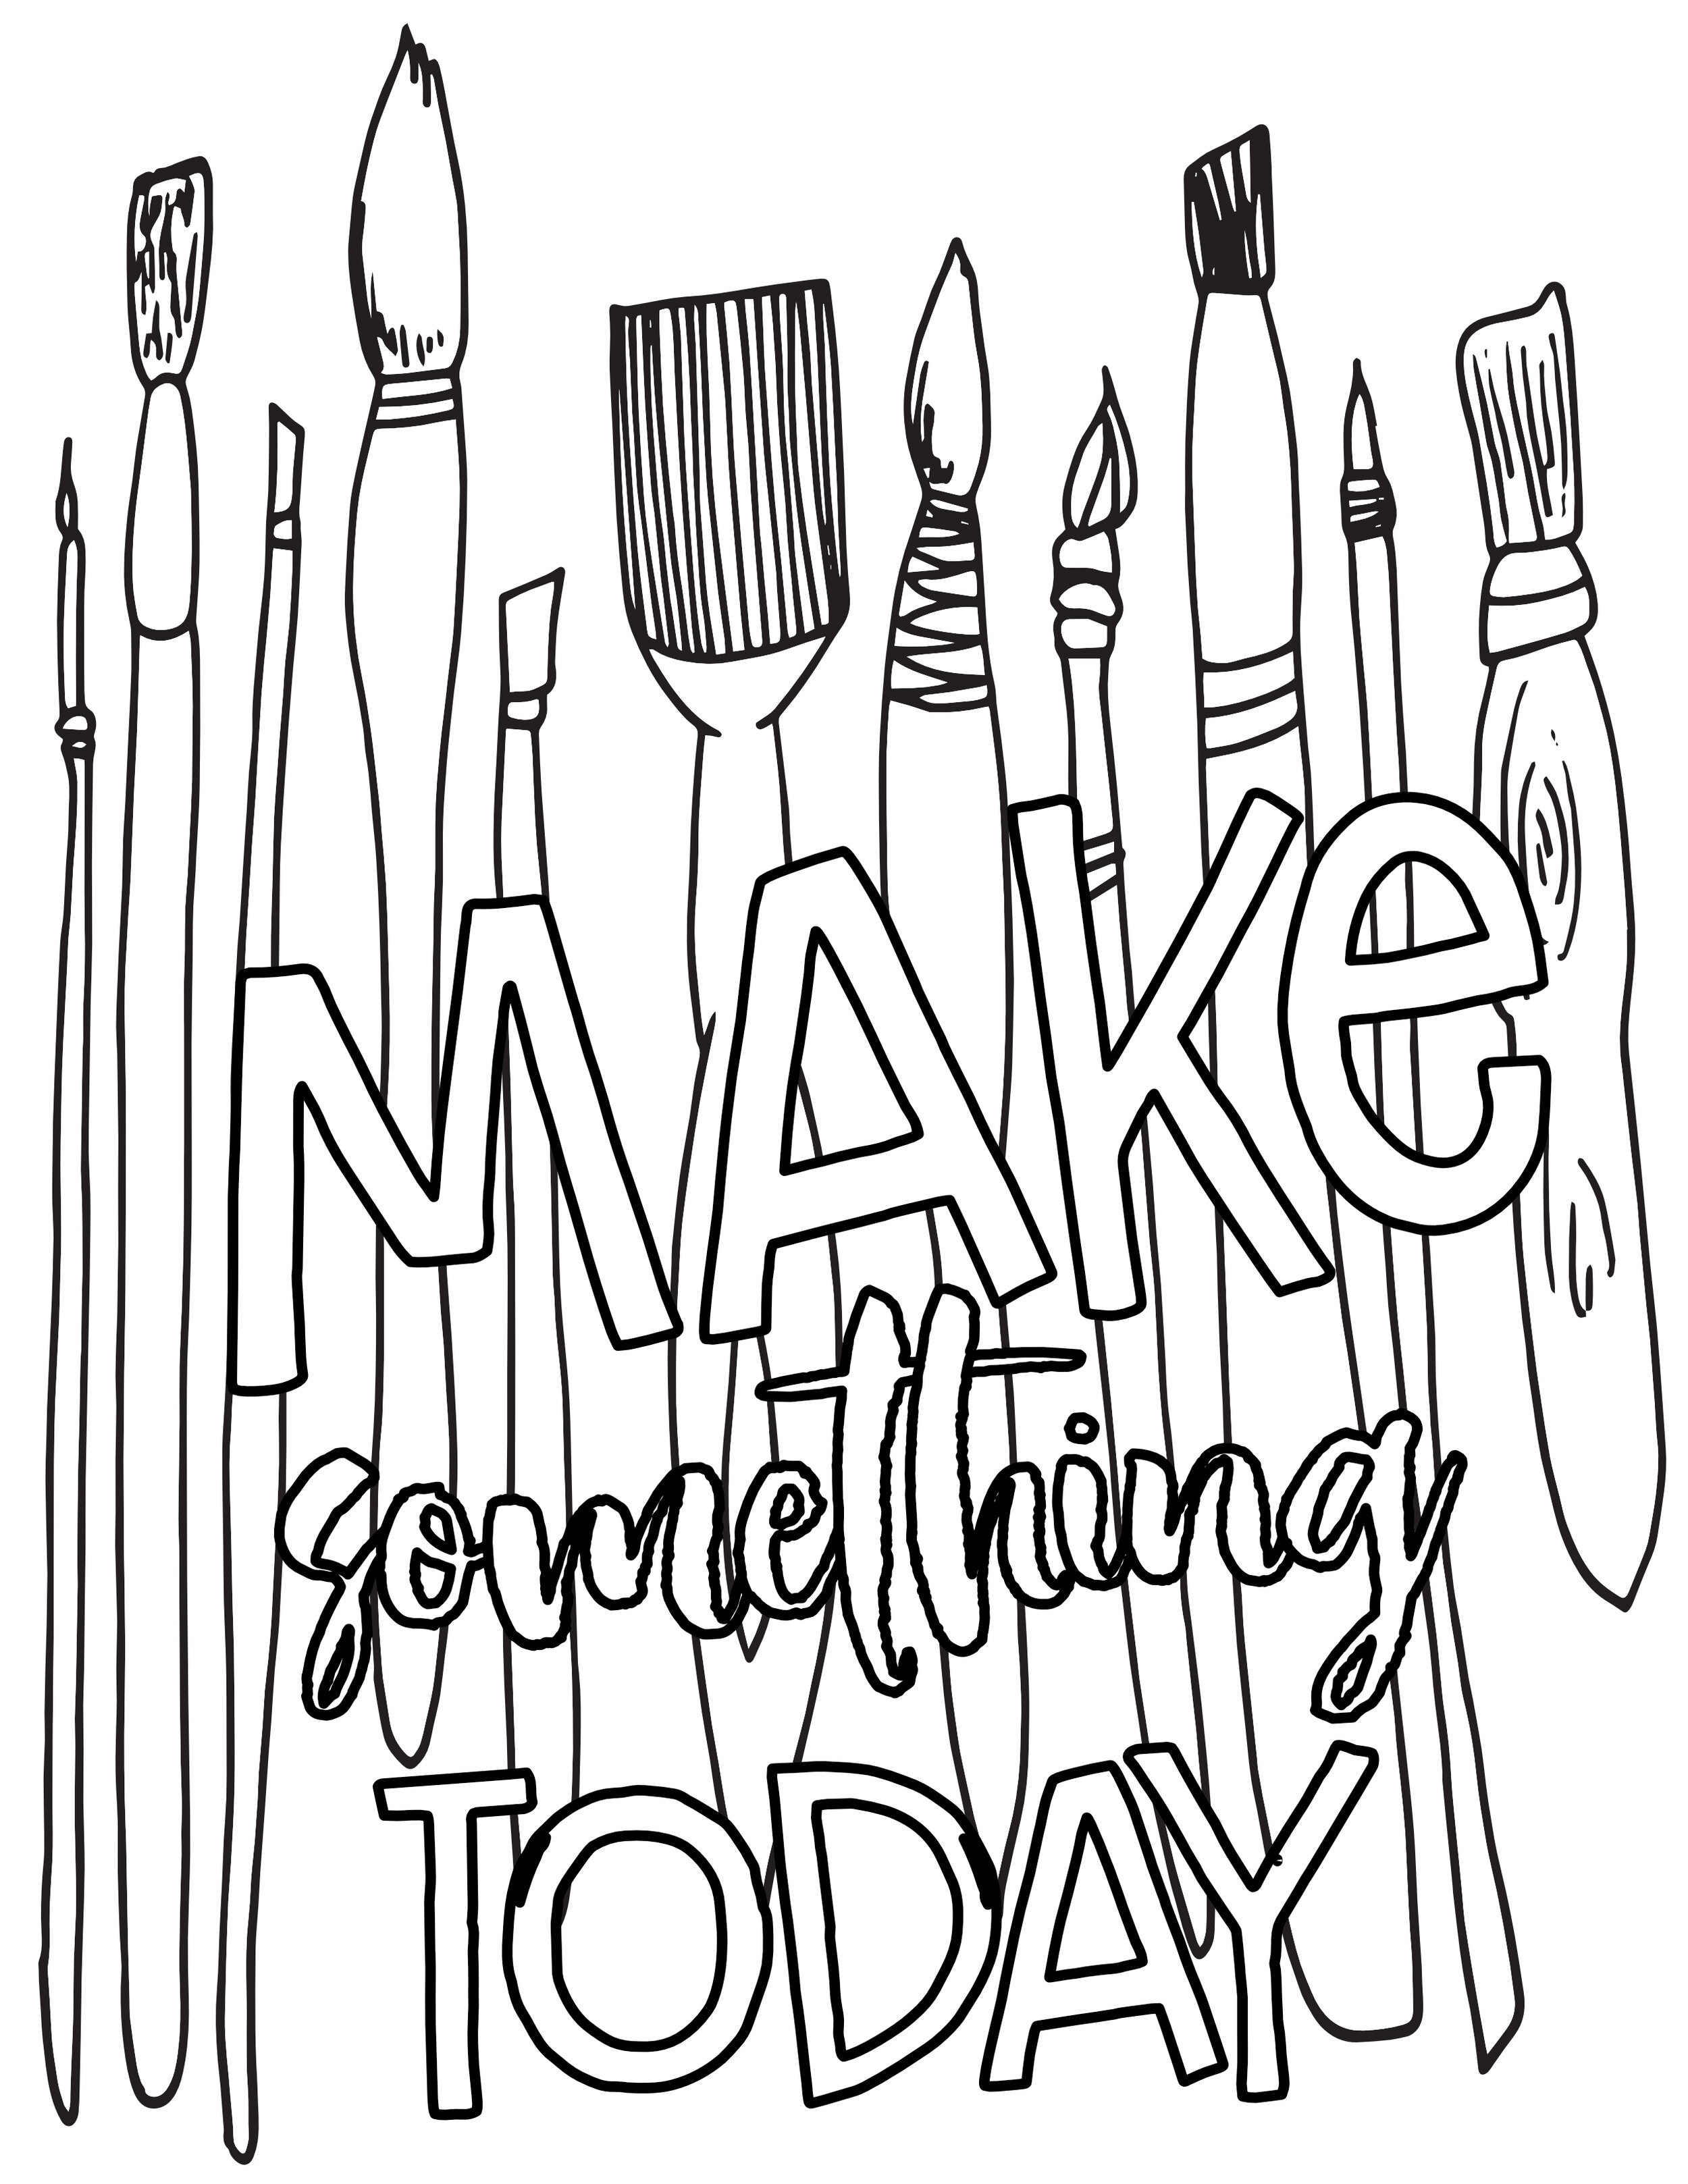 Make something today